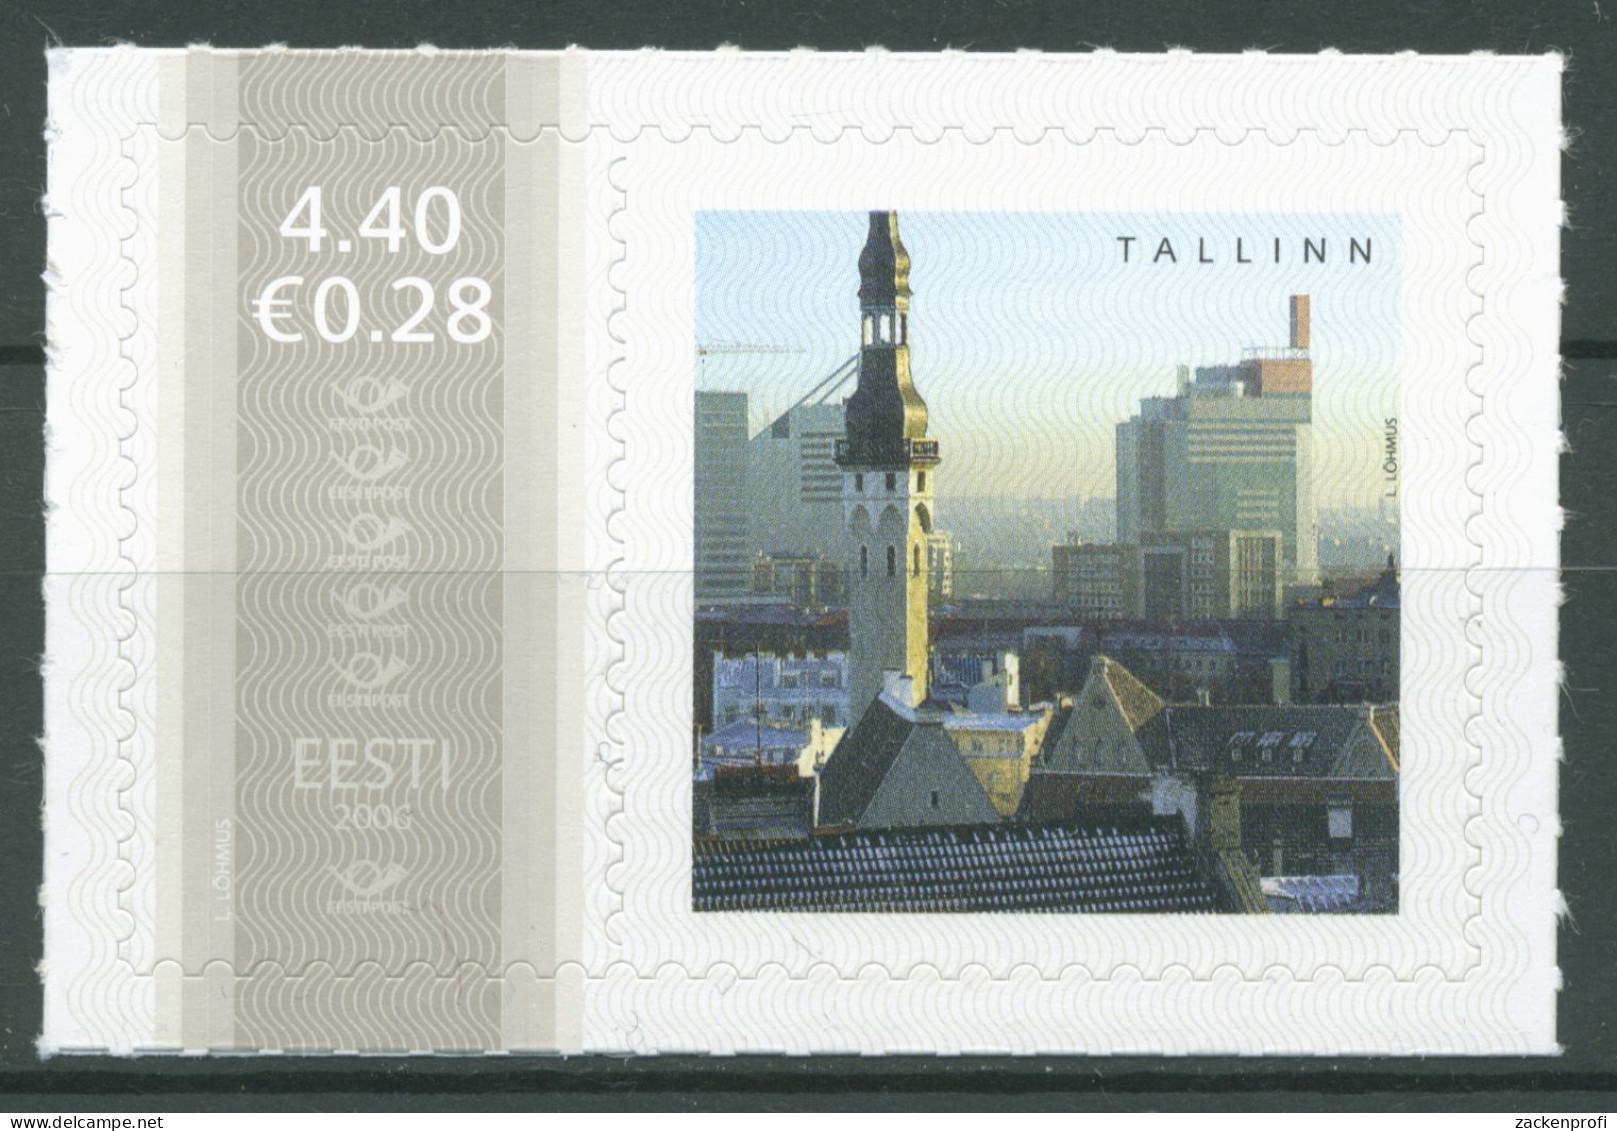 Estland 2006 Meine Marke Mit Personalisiertem Zierfeld Tallin 557 Zf Postfrisch - Estonia